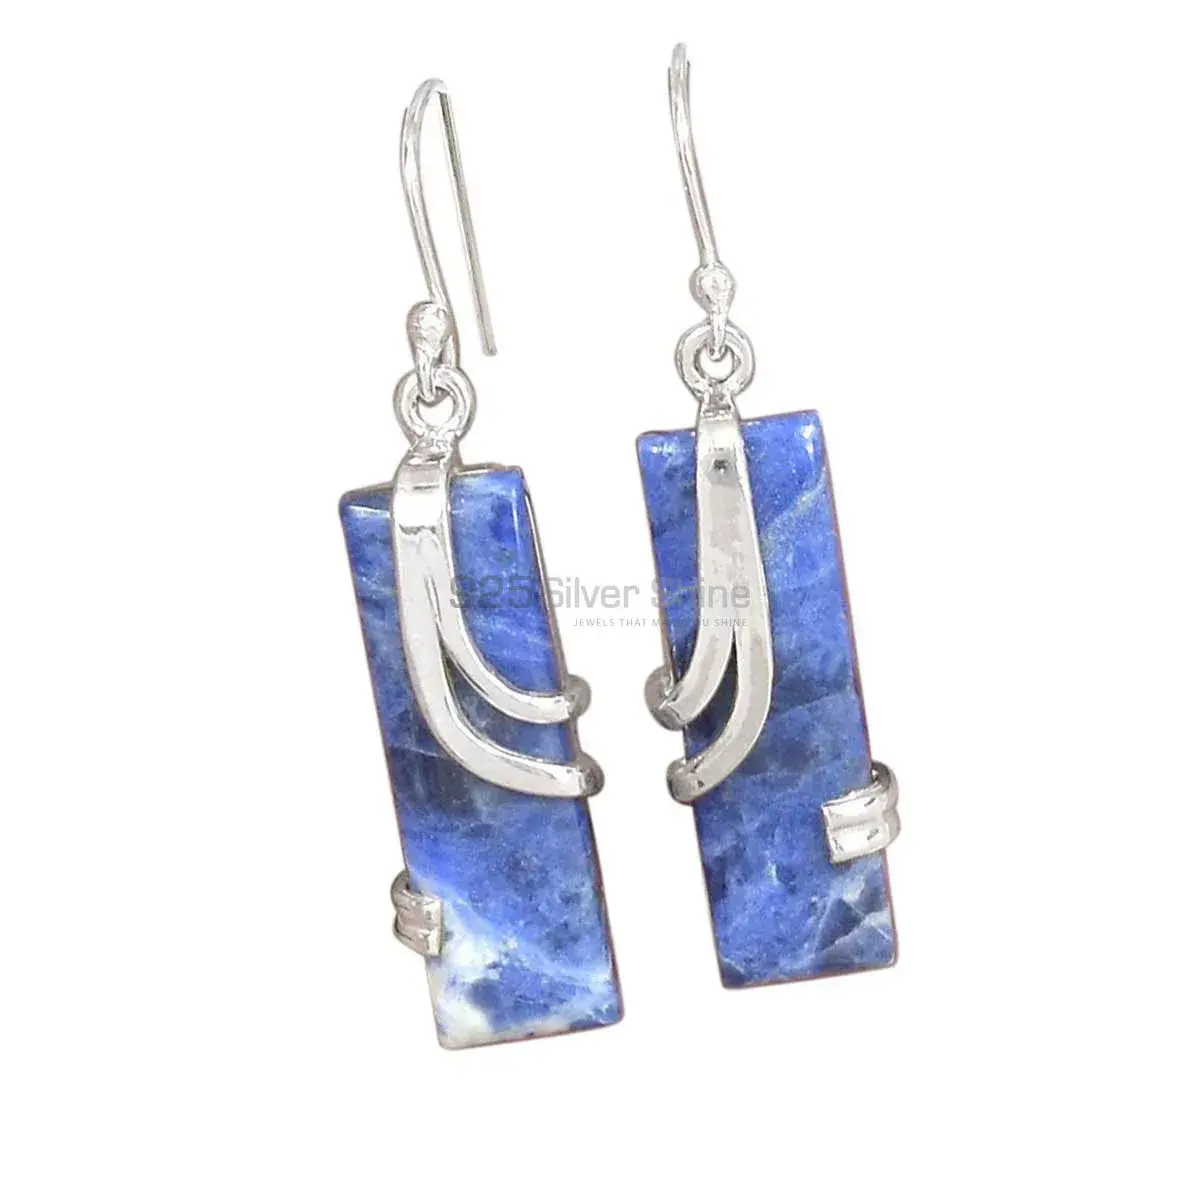 Best Design 925 Sterling Silver Handmade Earrings Suppliers In Stone Gemstone Jewelry 925SE2083